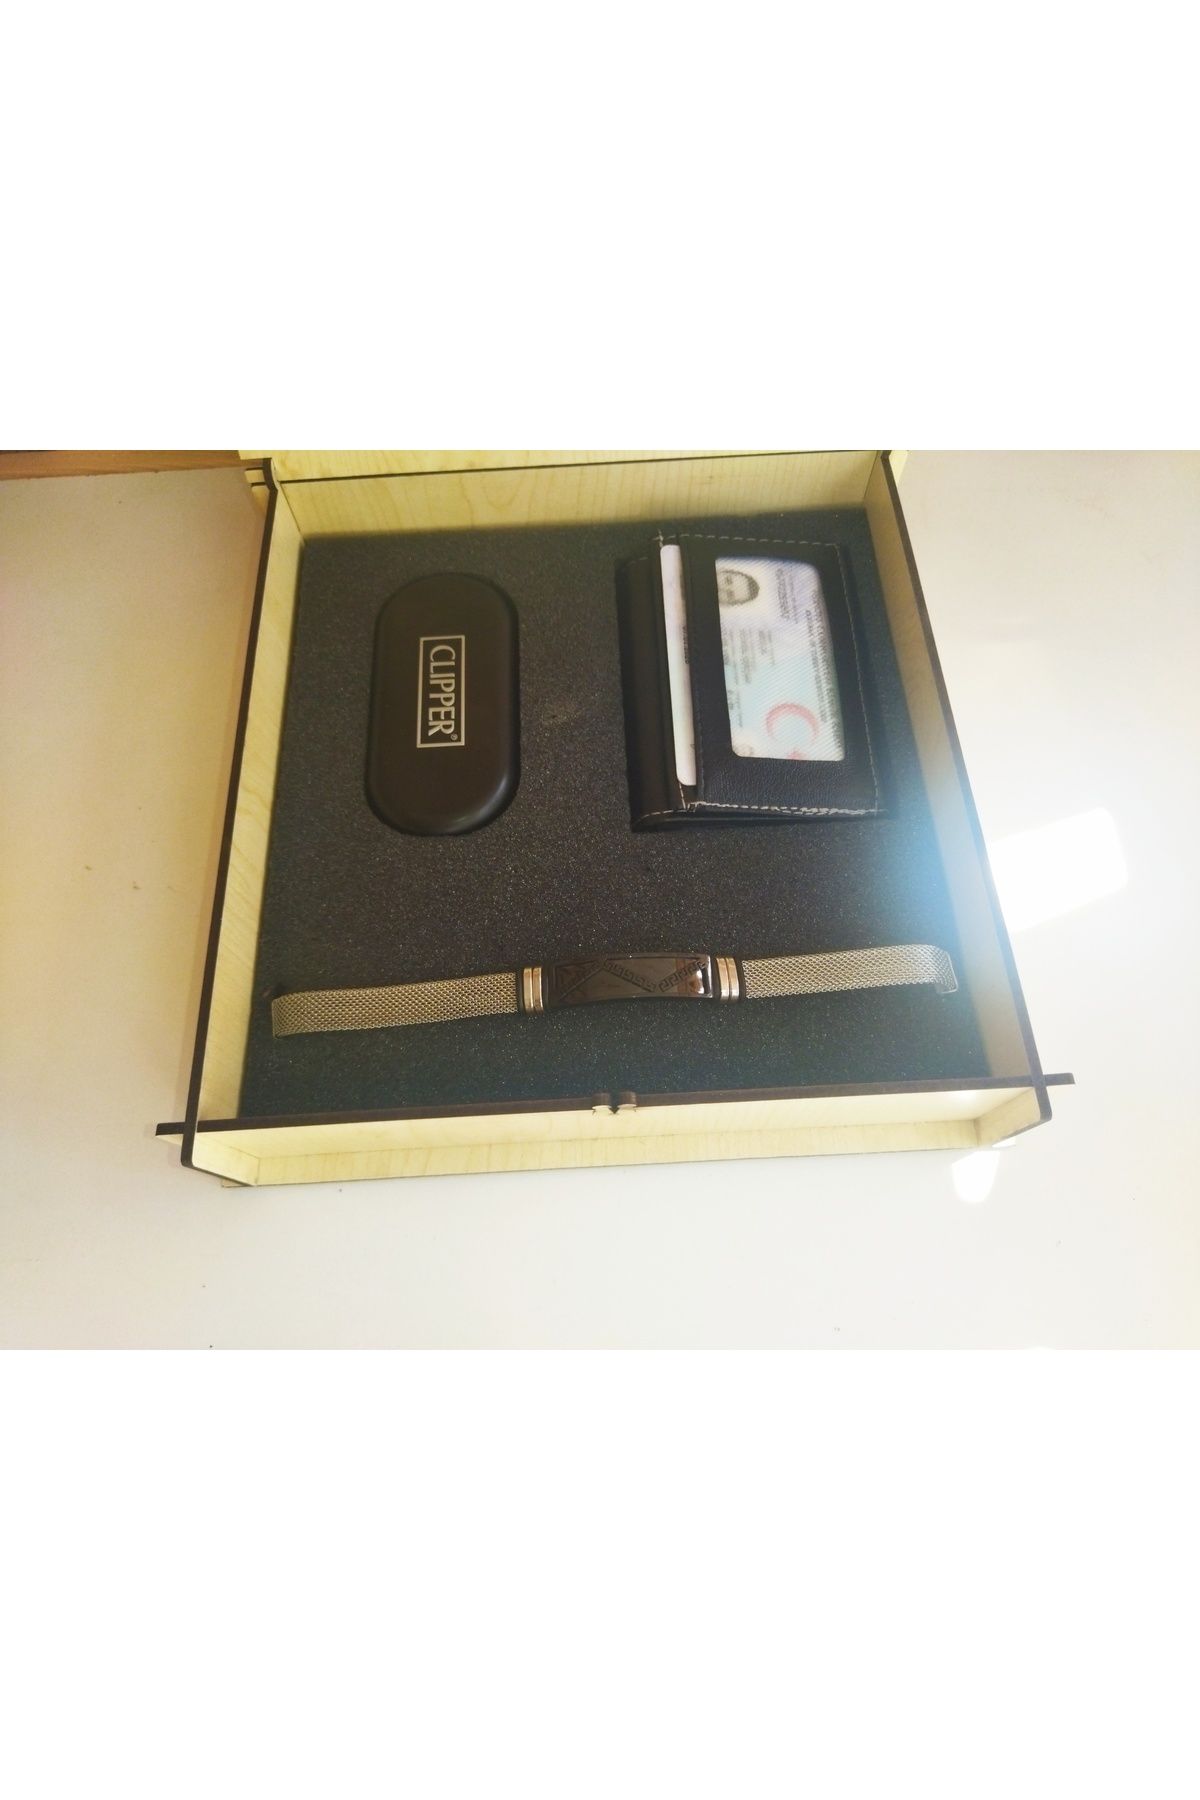 Clipper Mekanizmalı kartlık cüzdan, benzinli çakmak ve bileklikli hediye seti